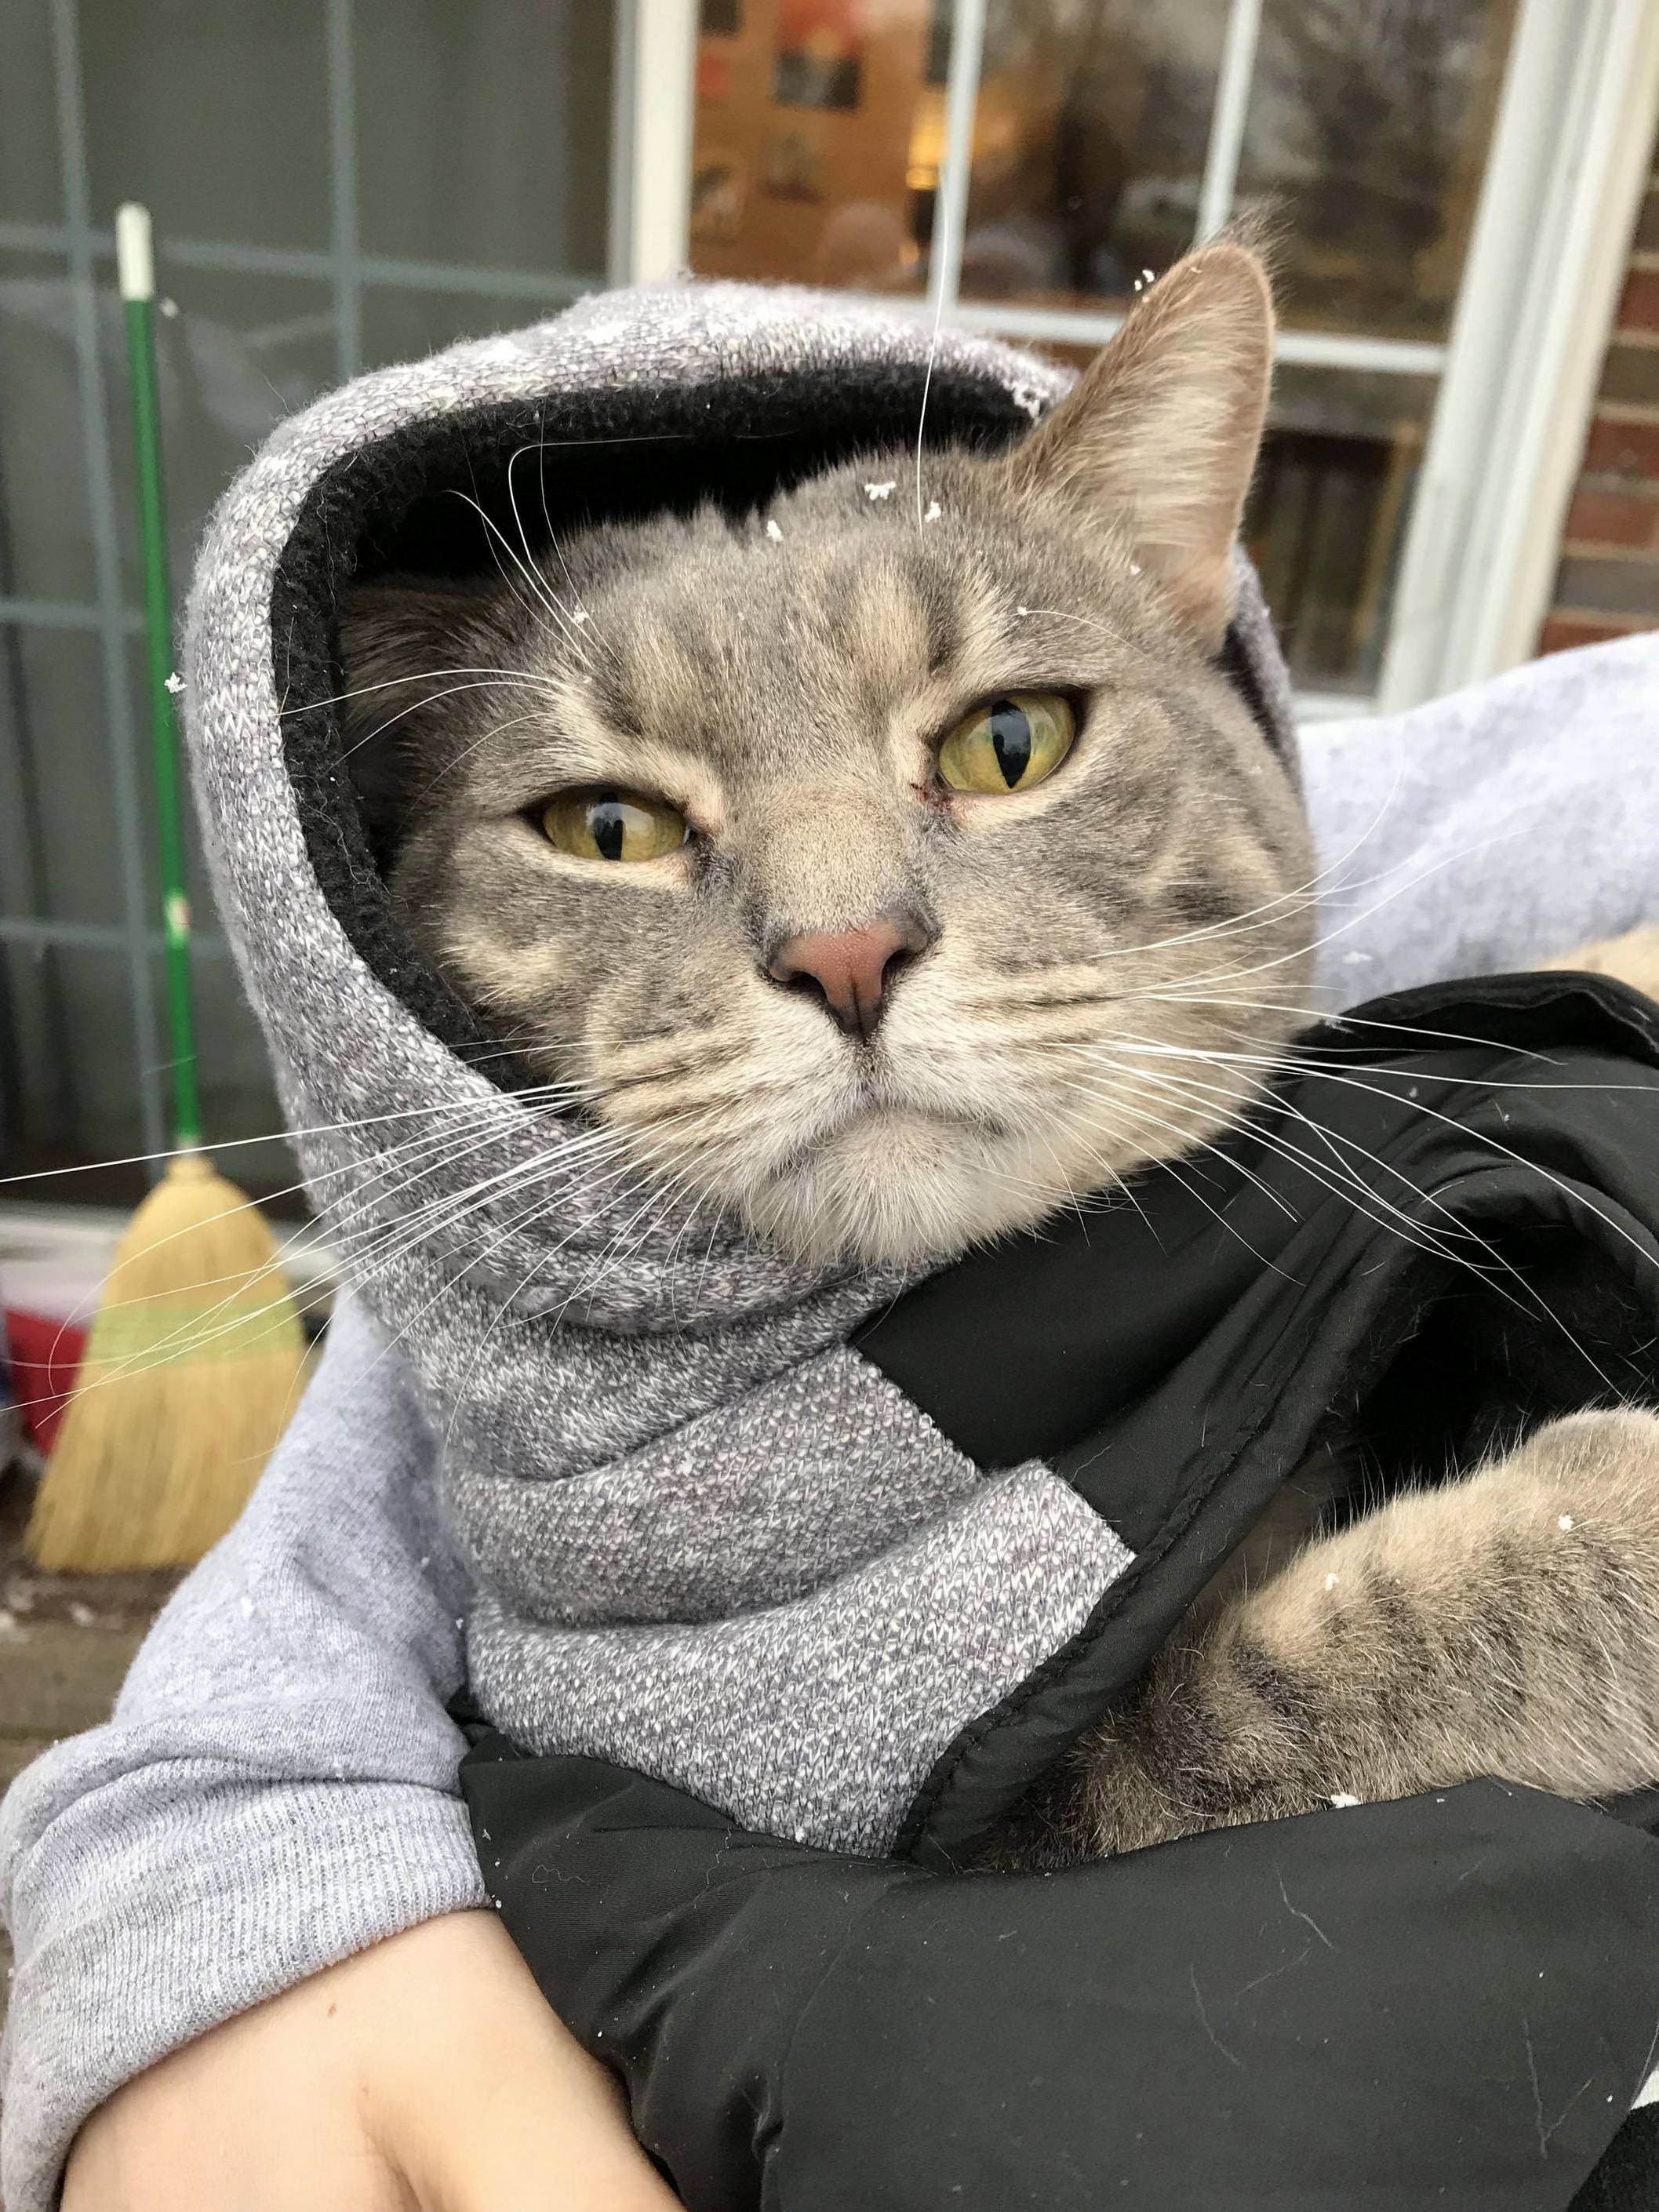 My cat in a coat.